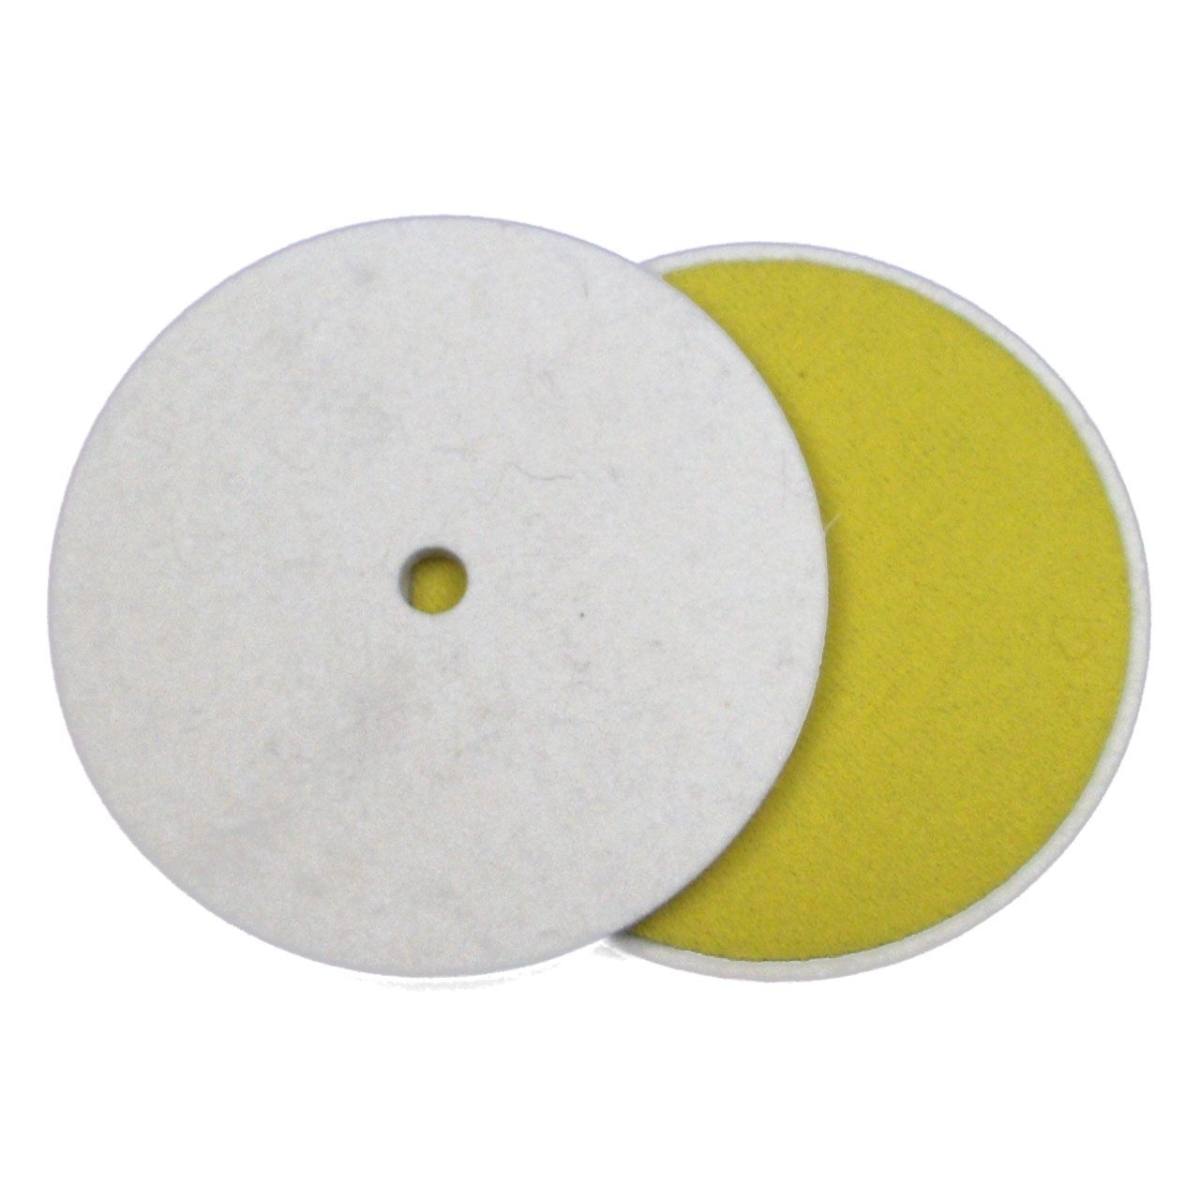 FIX KLETT felt disk, 150 mm x 10 mm, Merino, Velcro